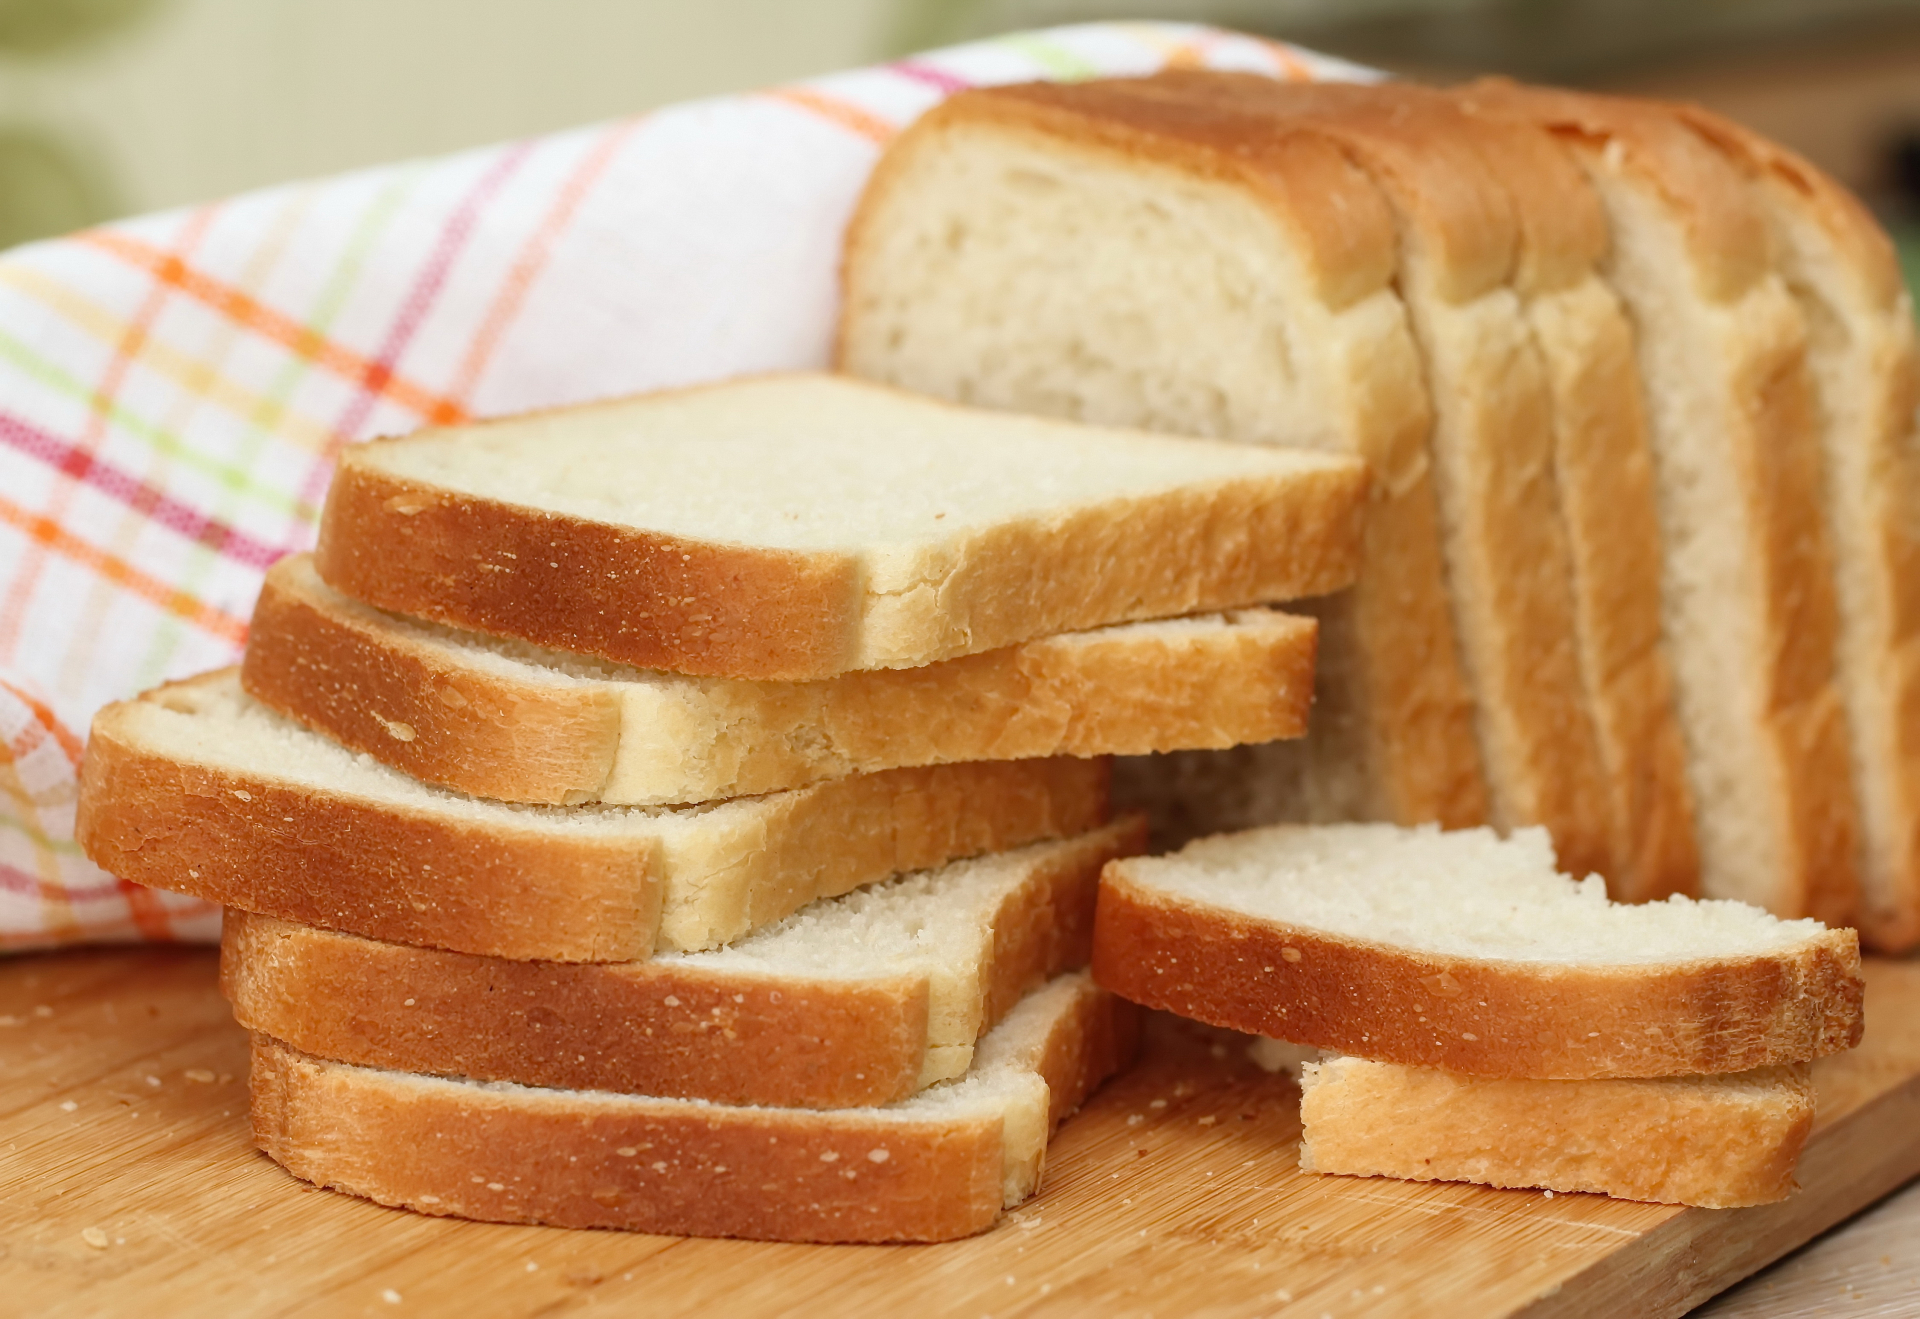 "Предизборен фойерверк": Ще скочи ли цената на хляба след решението на НС?